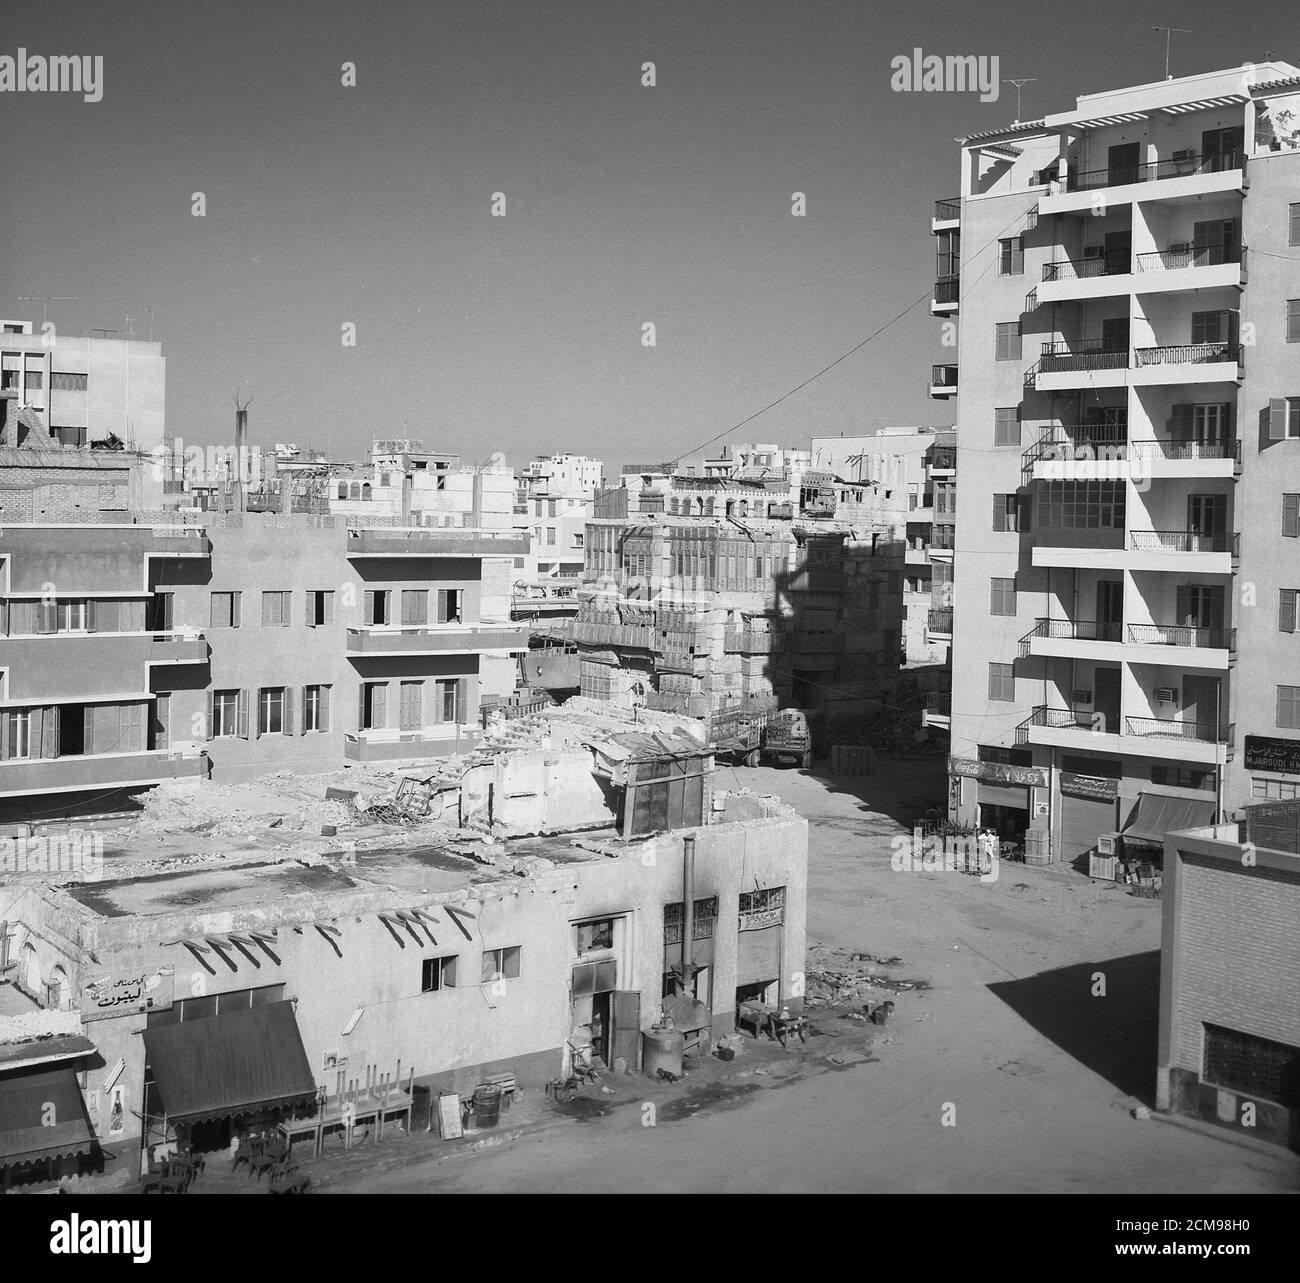 Années 1960, image historique montrant de nouveaux immeubles d'appartements modernes, certains partiellement construits et au loin quelques bâtiments plus anciens dans la ville portuaire de Jeddah, Arabie Saoudite. Banque D'Images